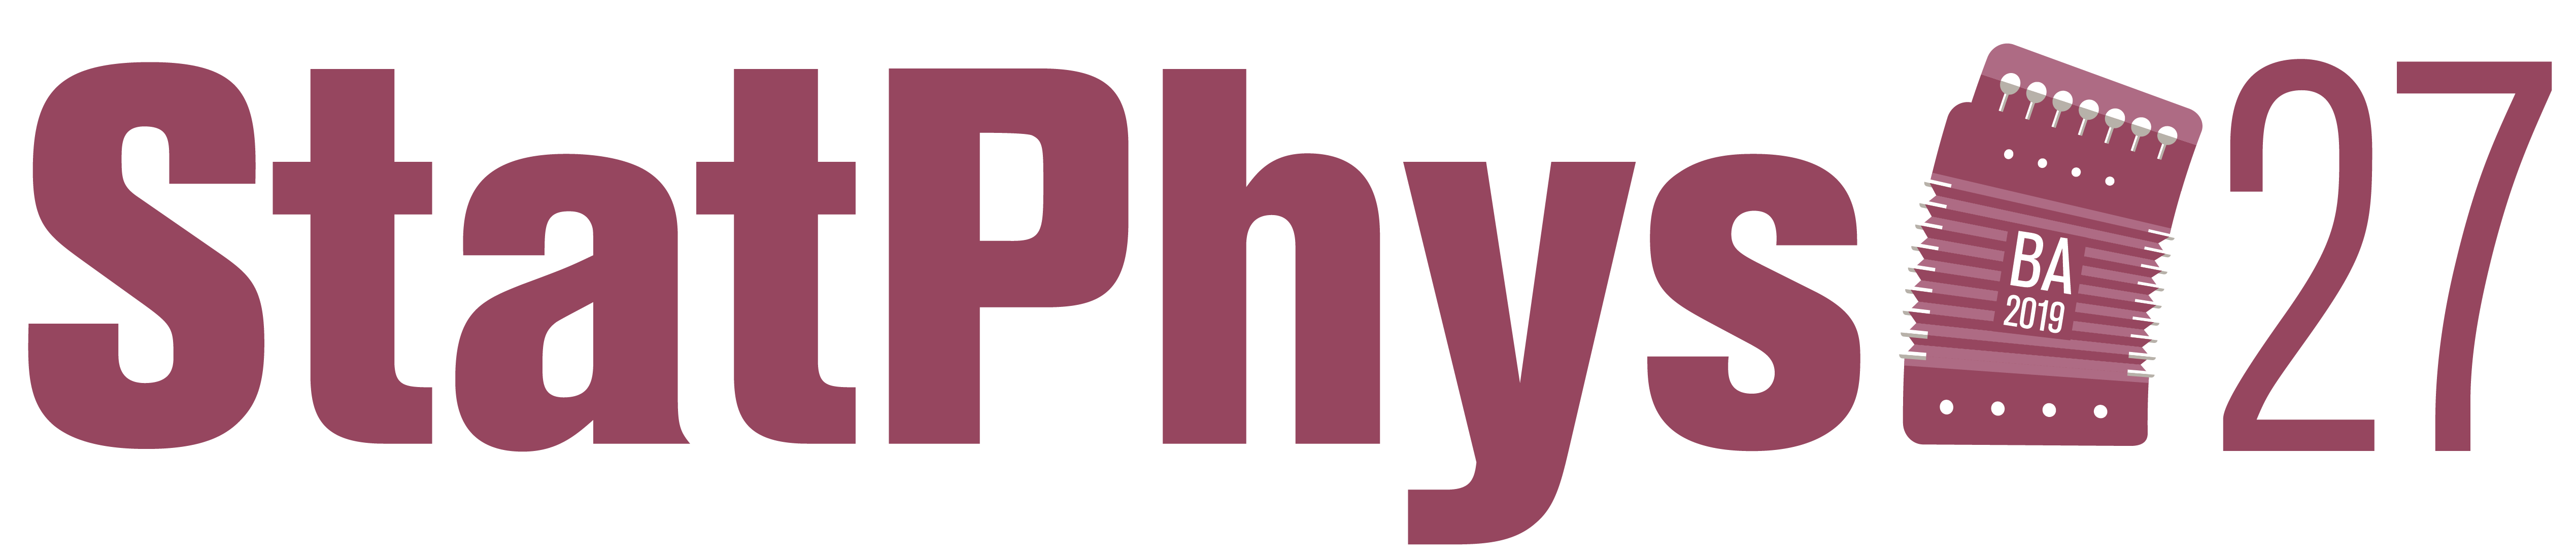 statphys27 logo